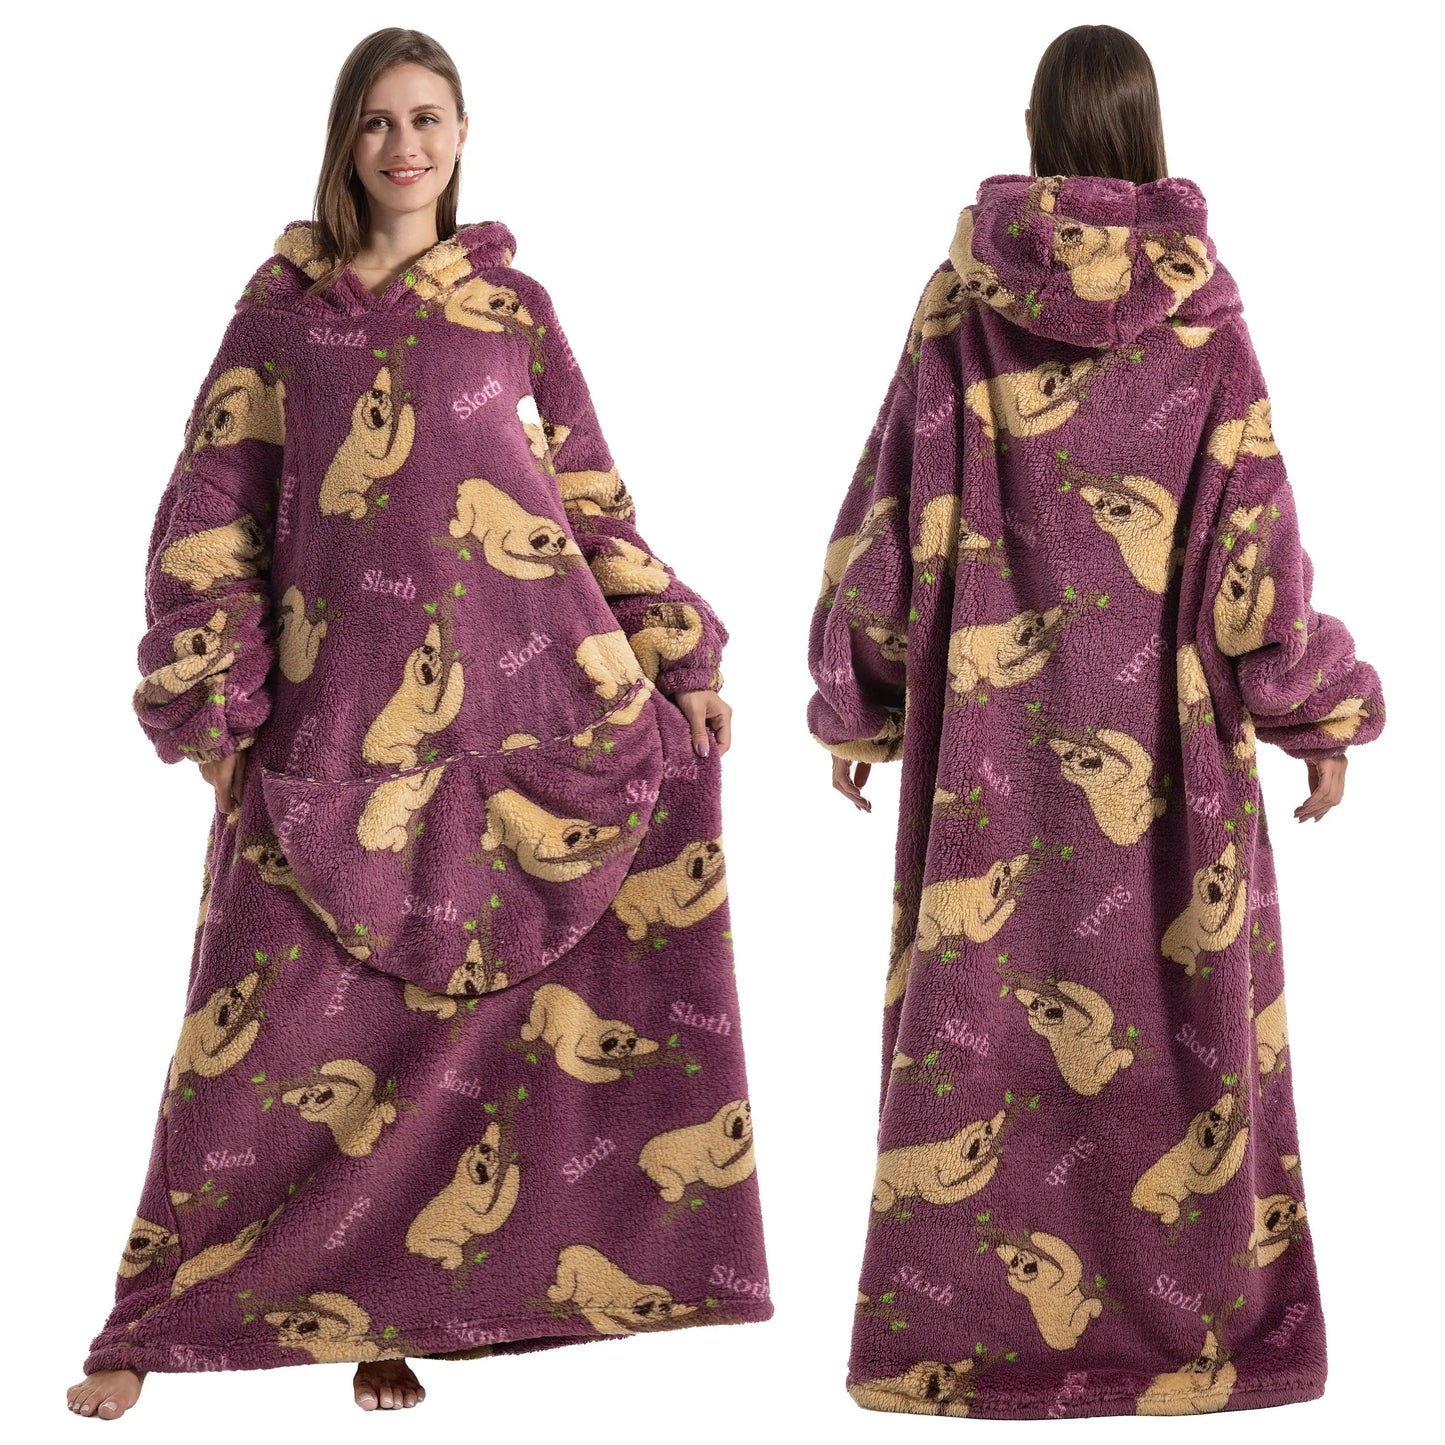 Comfy Wearable Oversized Hoodie Long Blanket Sleepwear & Loungewear jehouze Sloth 